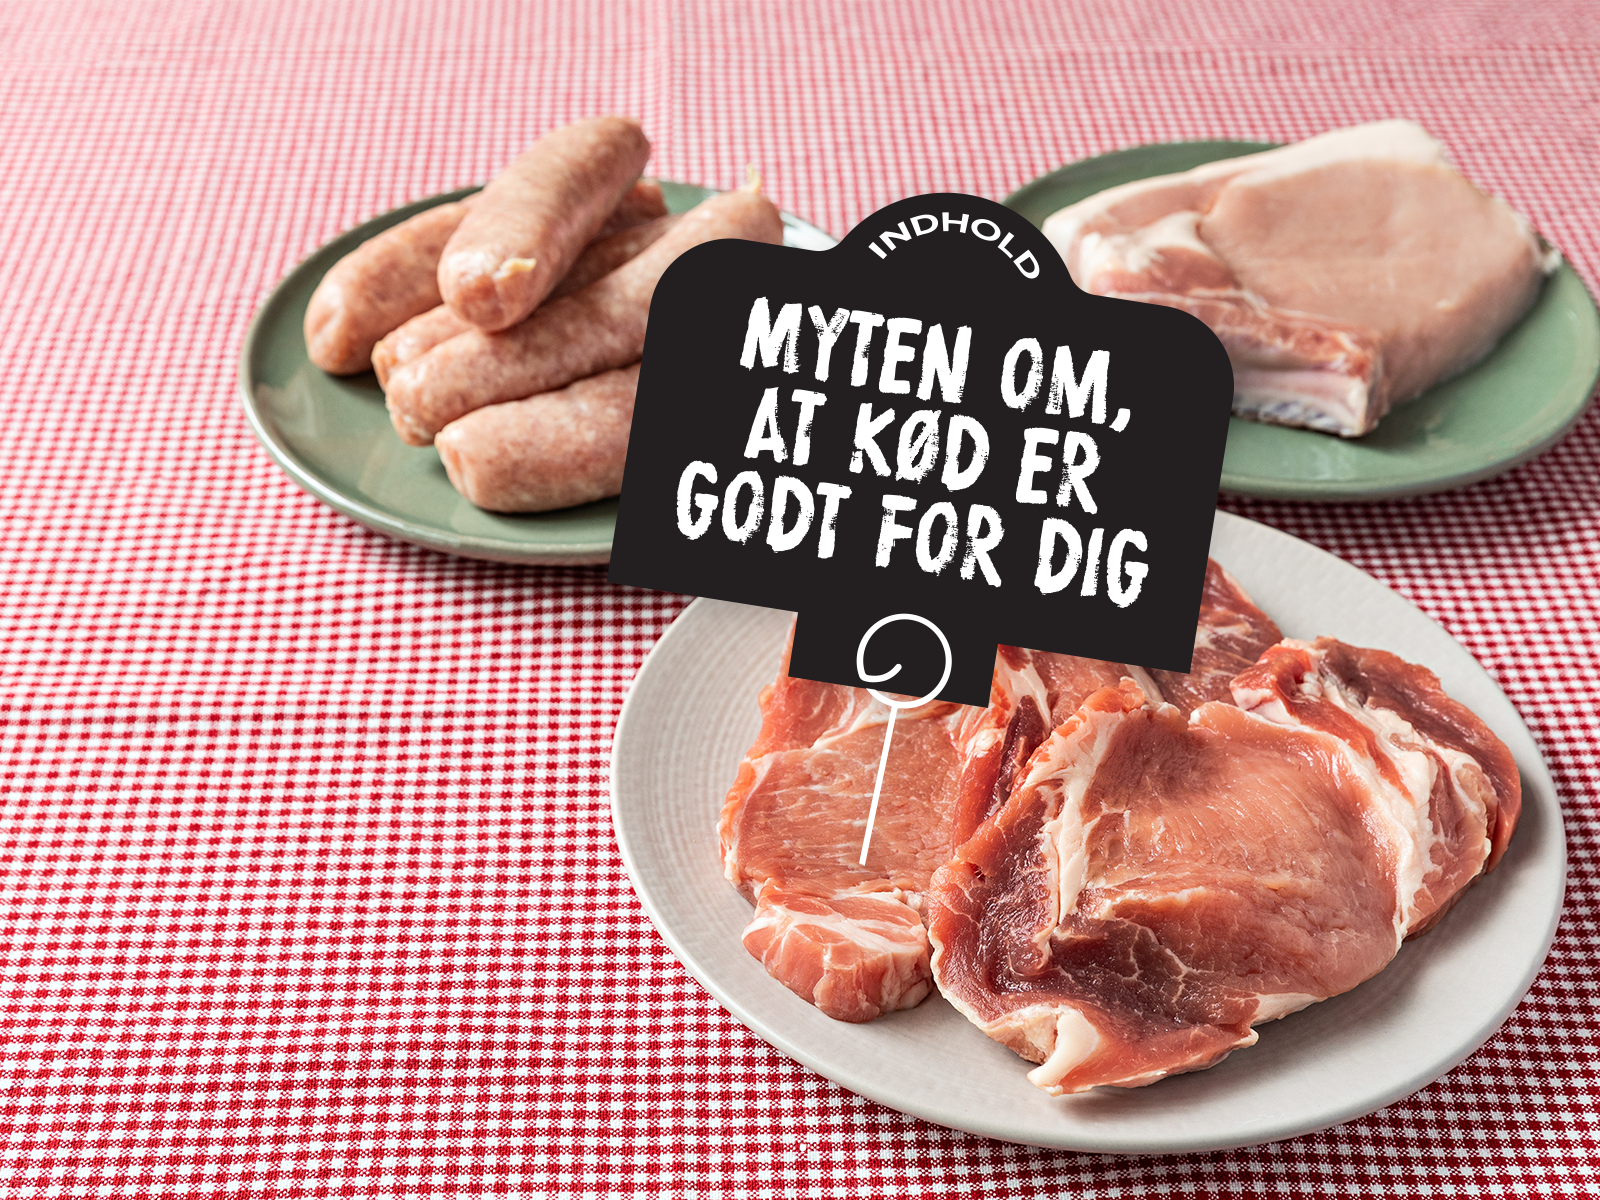 Myten om, at kød er godt for dig